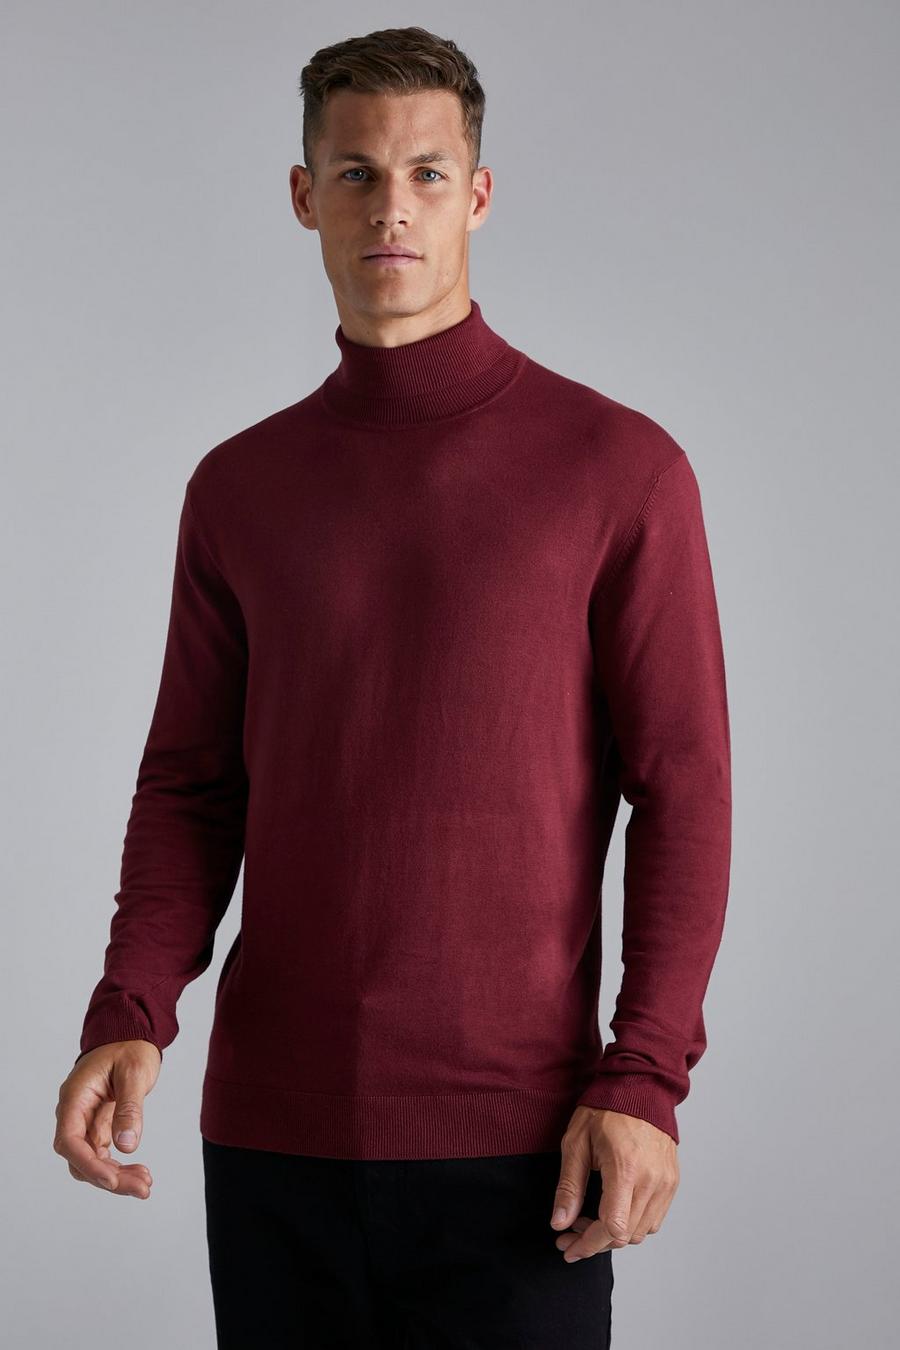 אדום בורגונדי rojo סוודר בגזרה רגילה עם צווארון נגלל, לגברים גבוהים